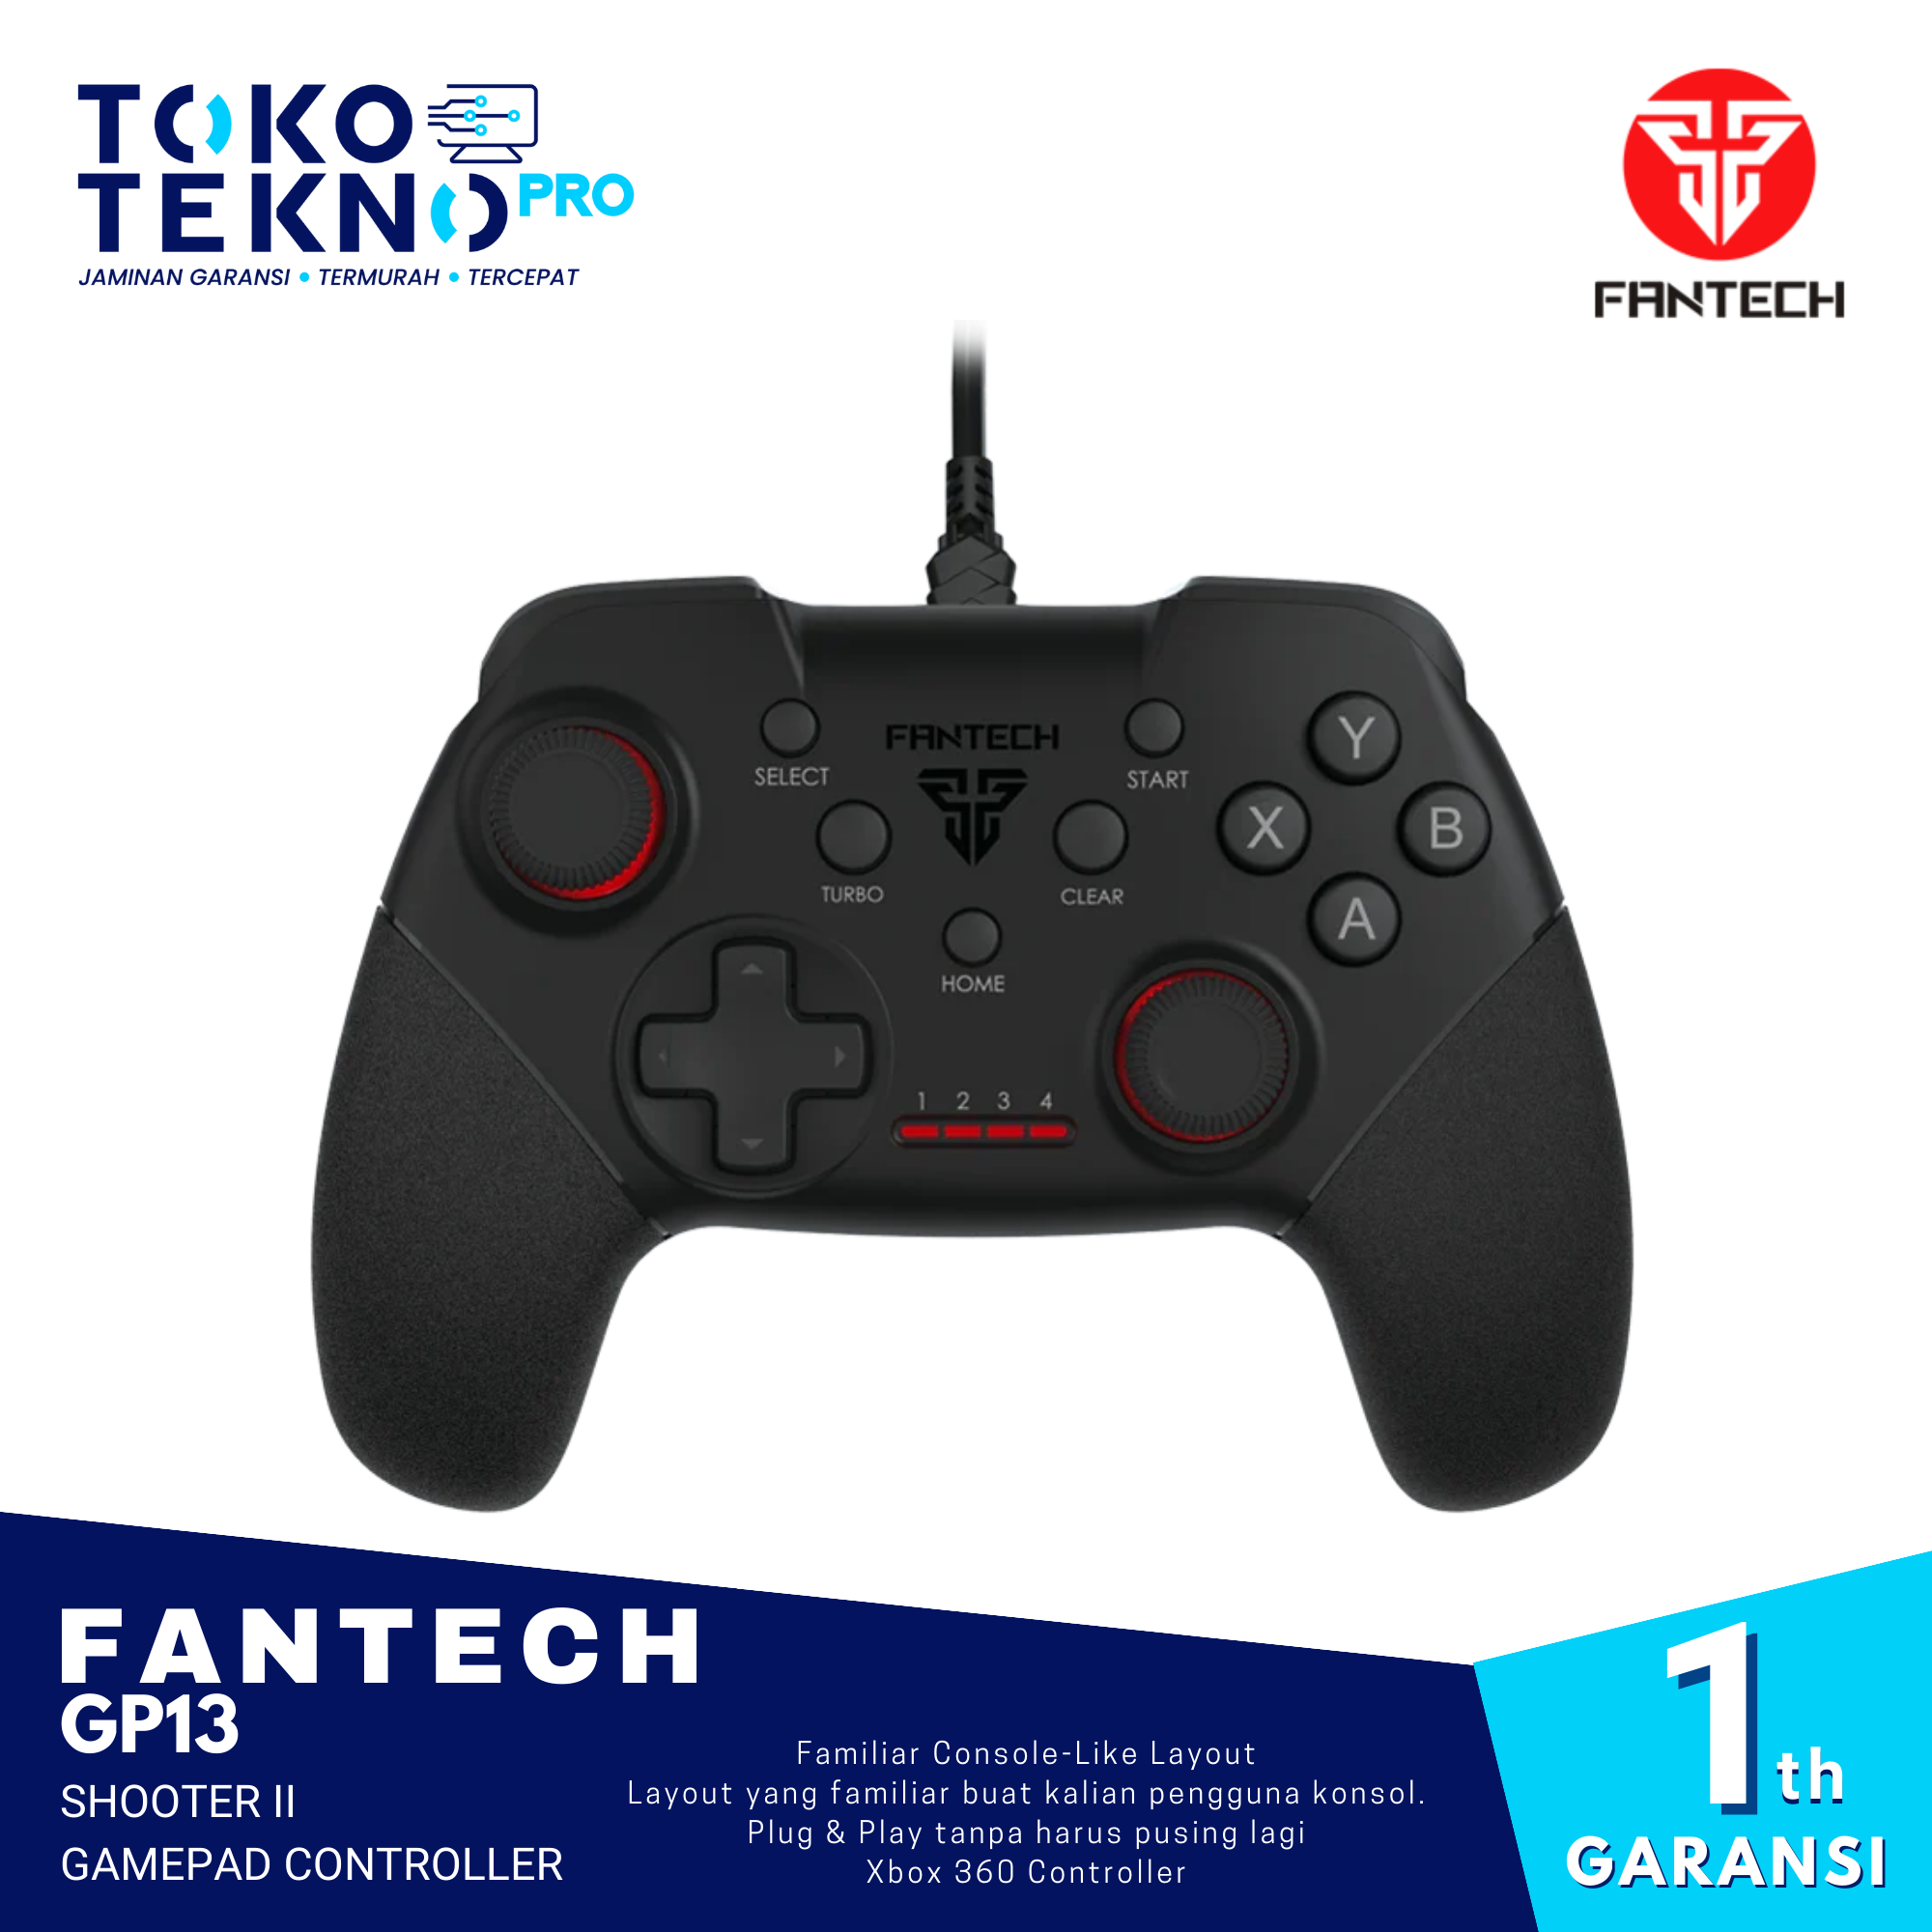 Fantech GP13 Shooter II Gamepad Controller